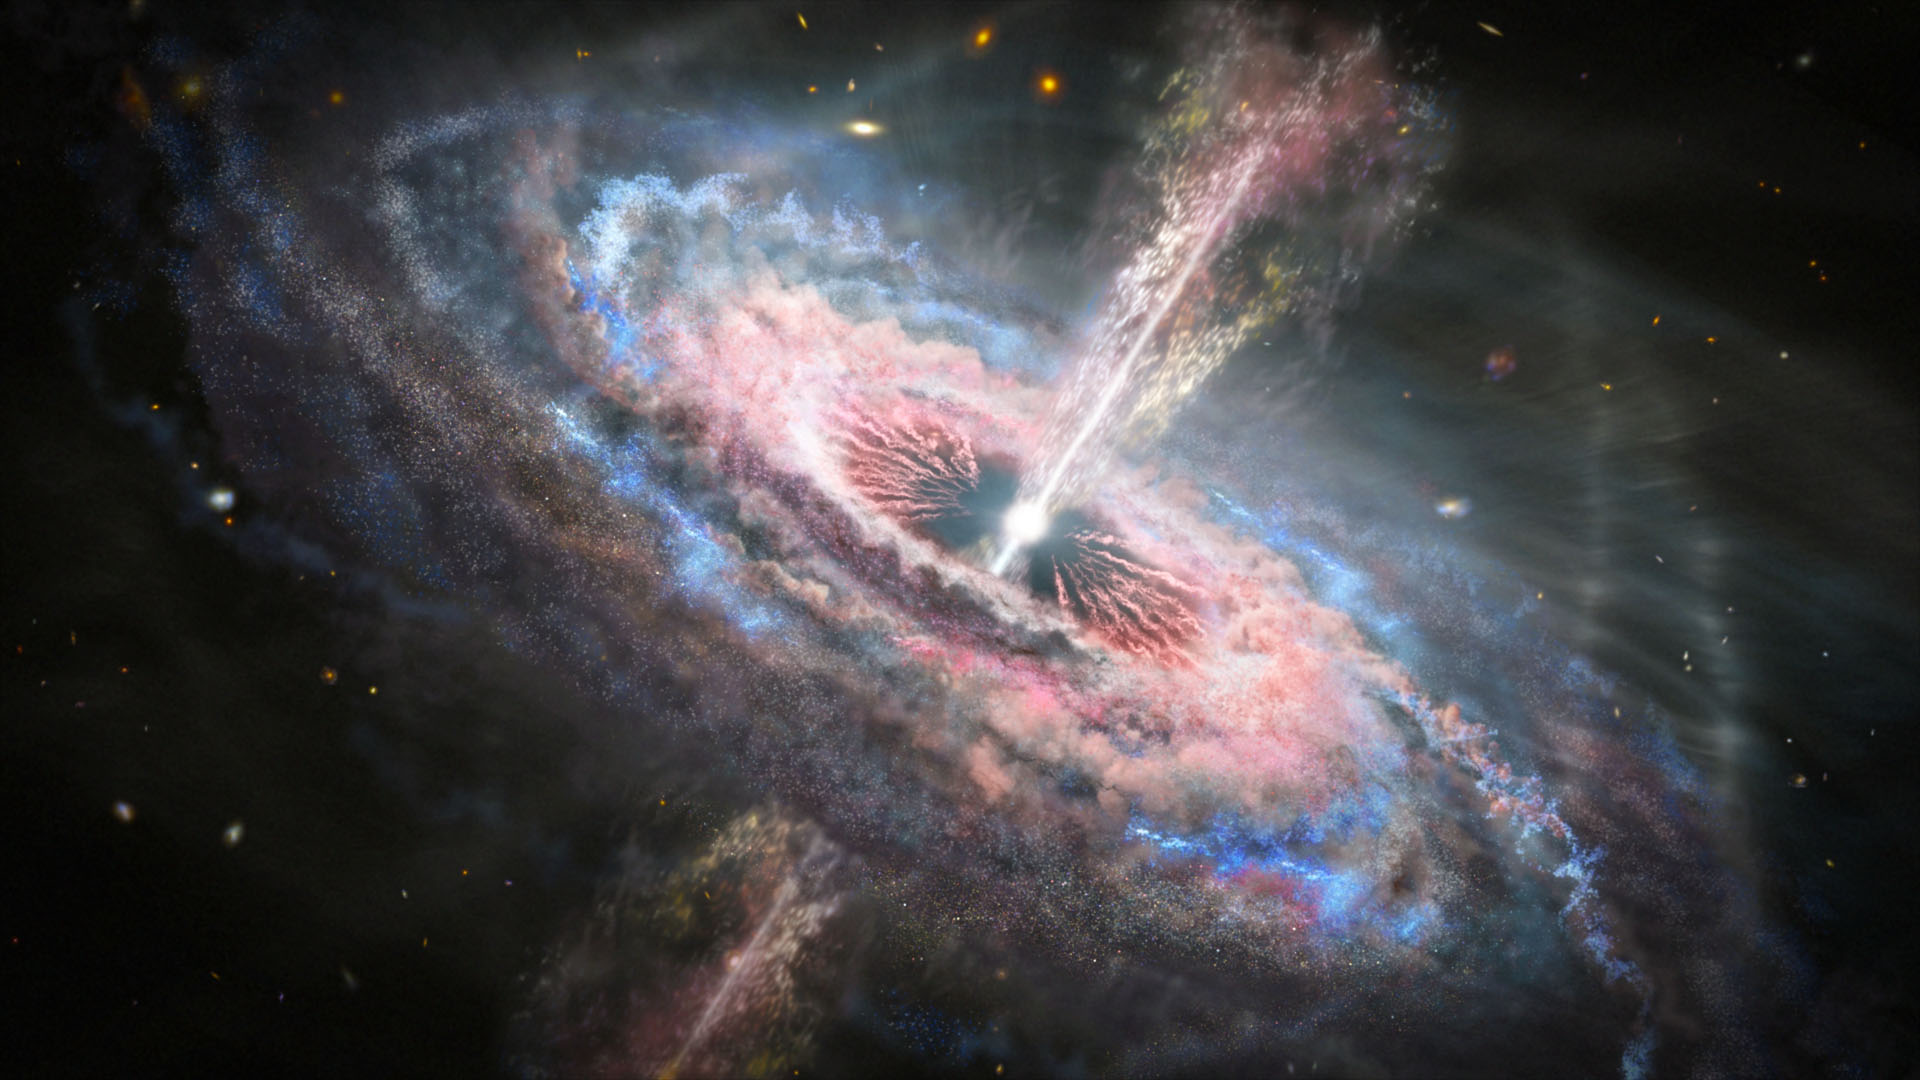 Illustration einer Galaxie mit einem Quasar, einem aktiven, hellen und entfernten supermassiven Schwarzen Loch in ihrem Herzen